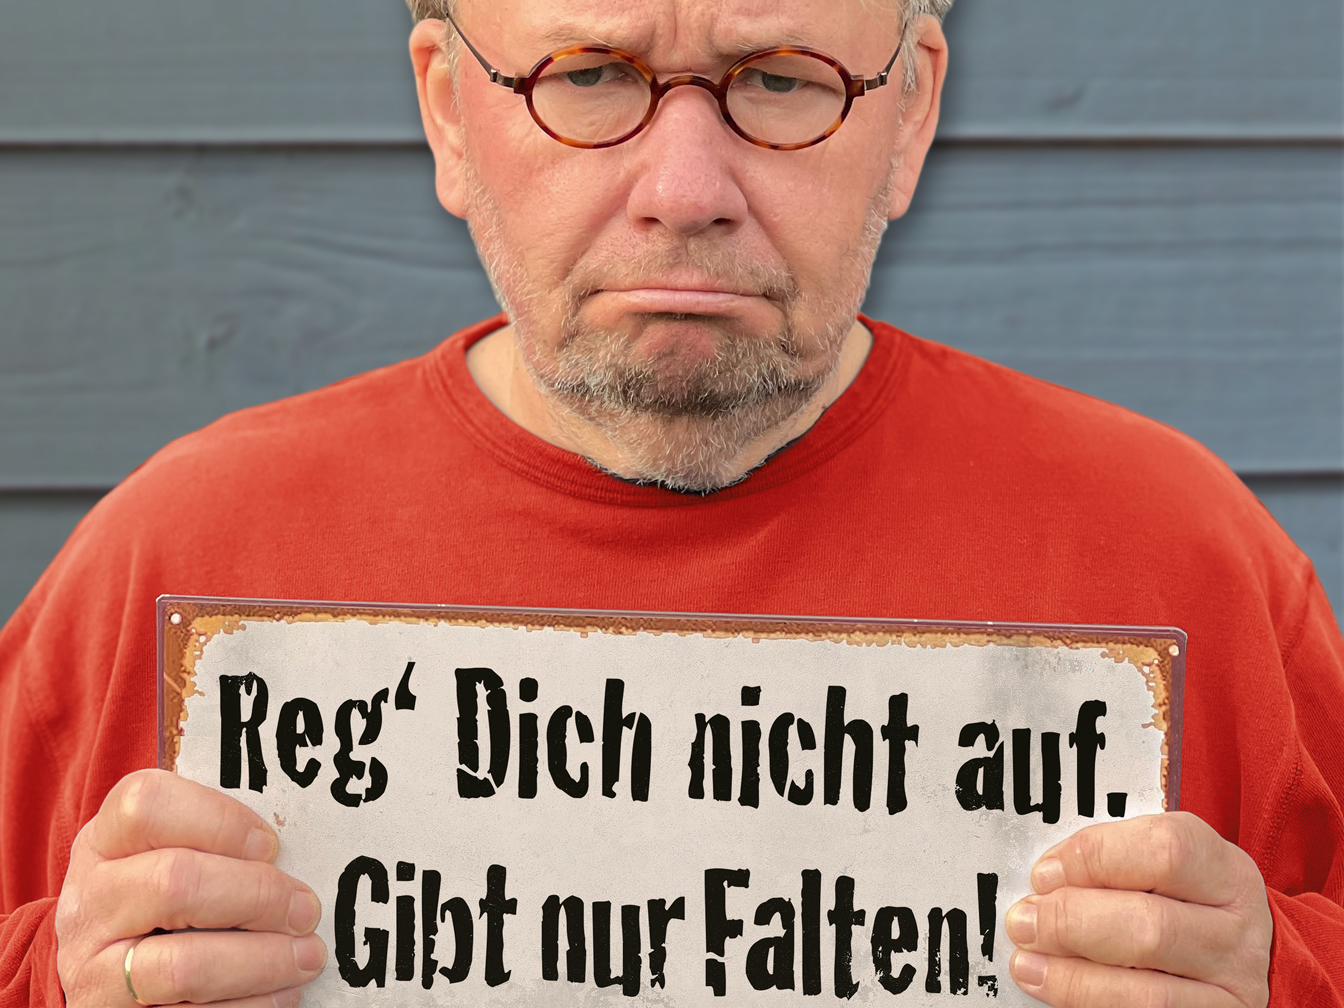 Bernd Stelter mit einem Schild "Reg dich nicht auf, gibt nur Falten!